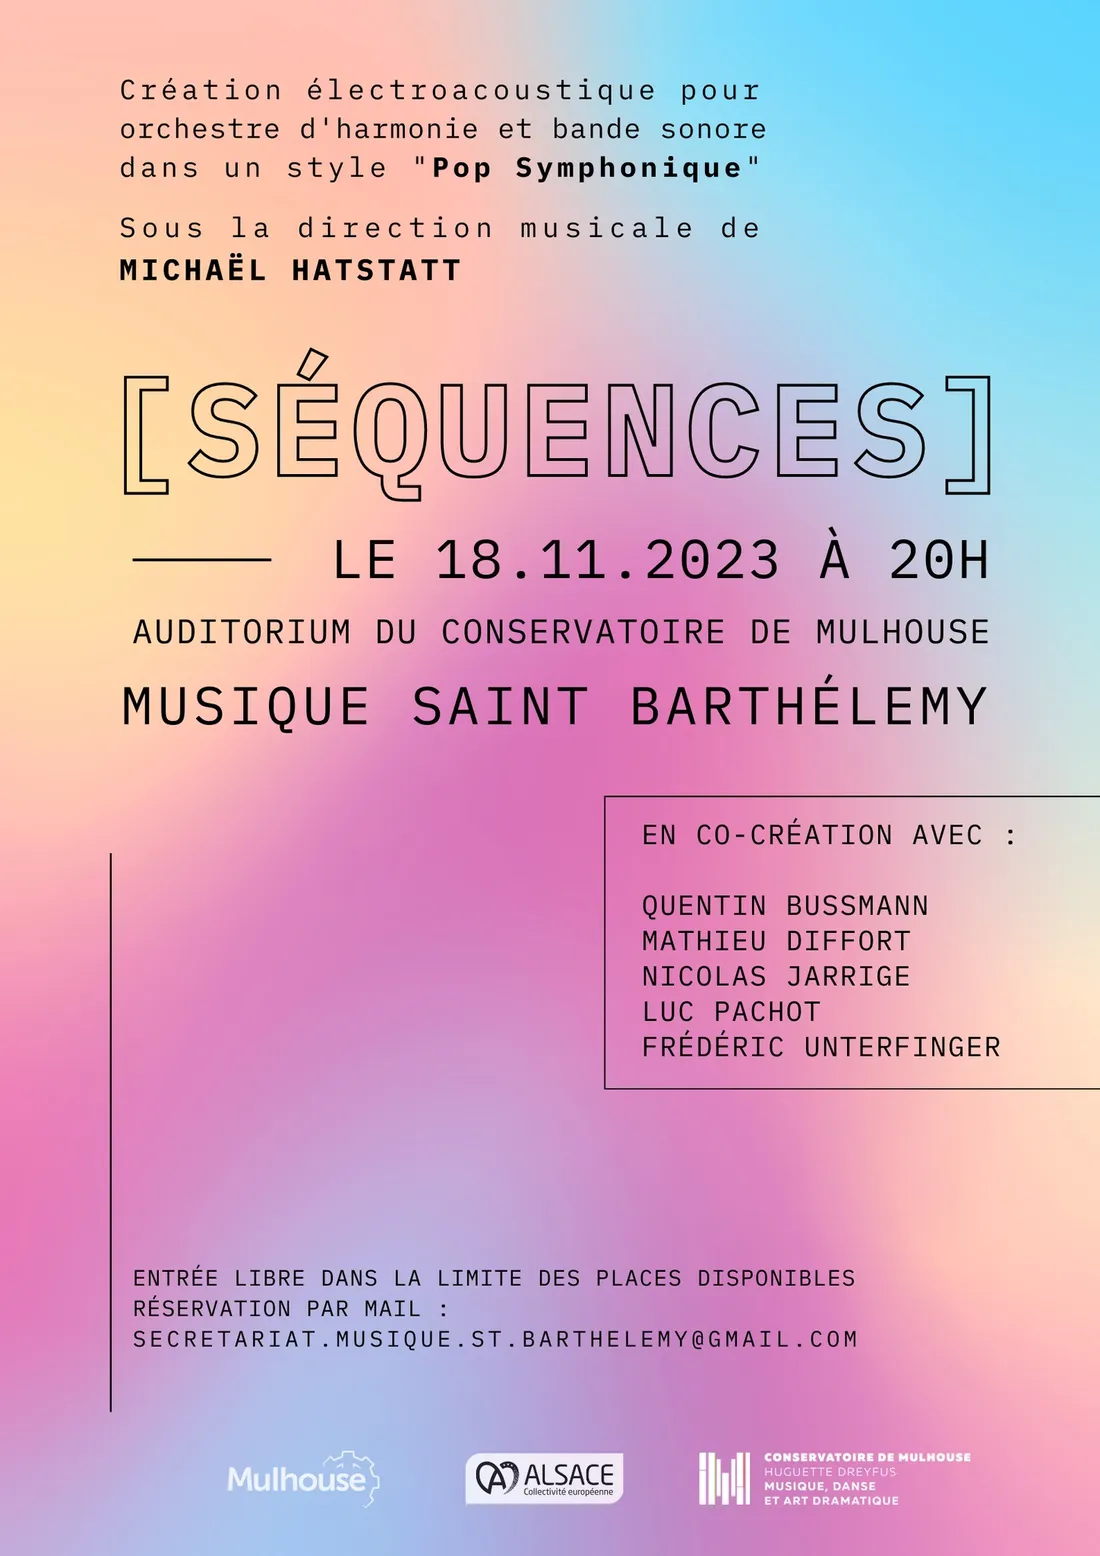 MUSIQUE SAINT BARTHELEMY - PROJET "Séquences" 2 ème Concert